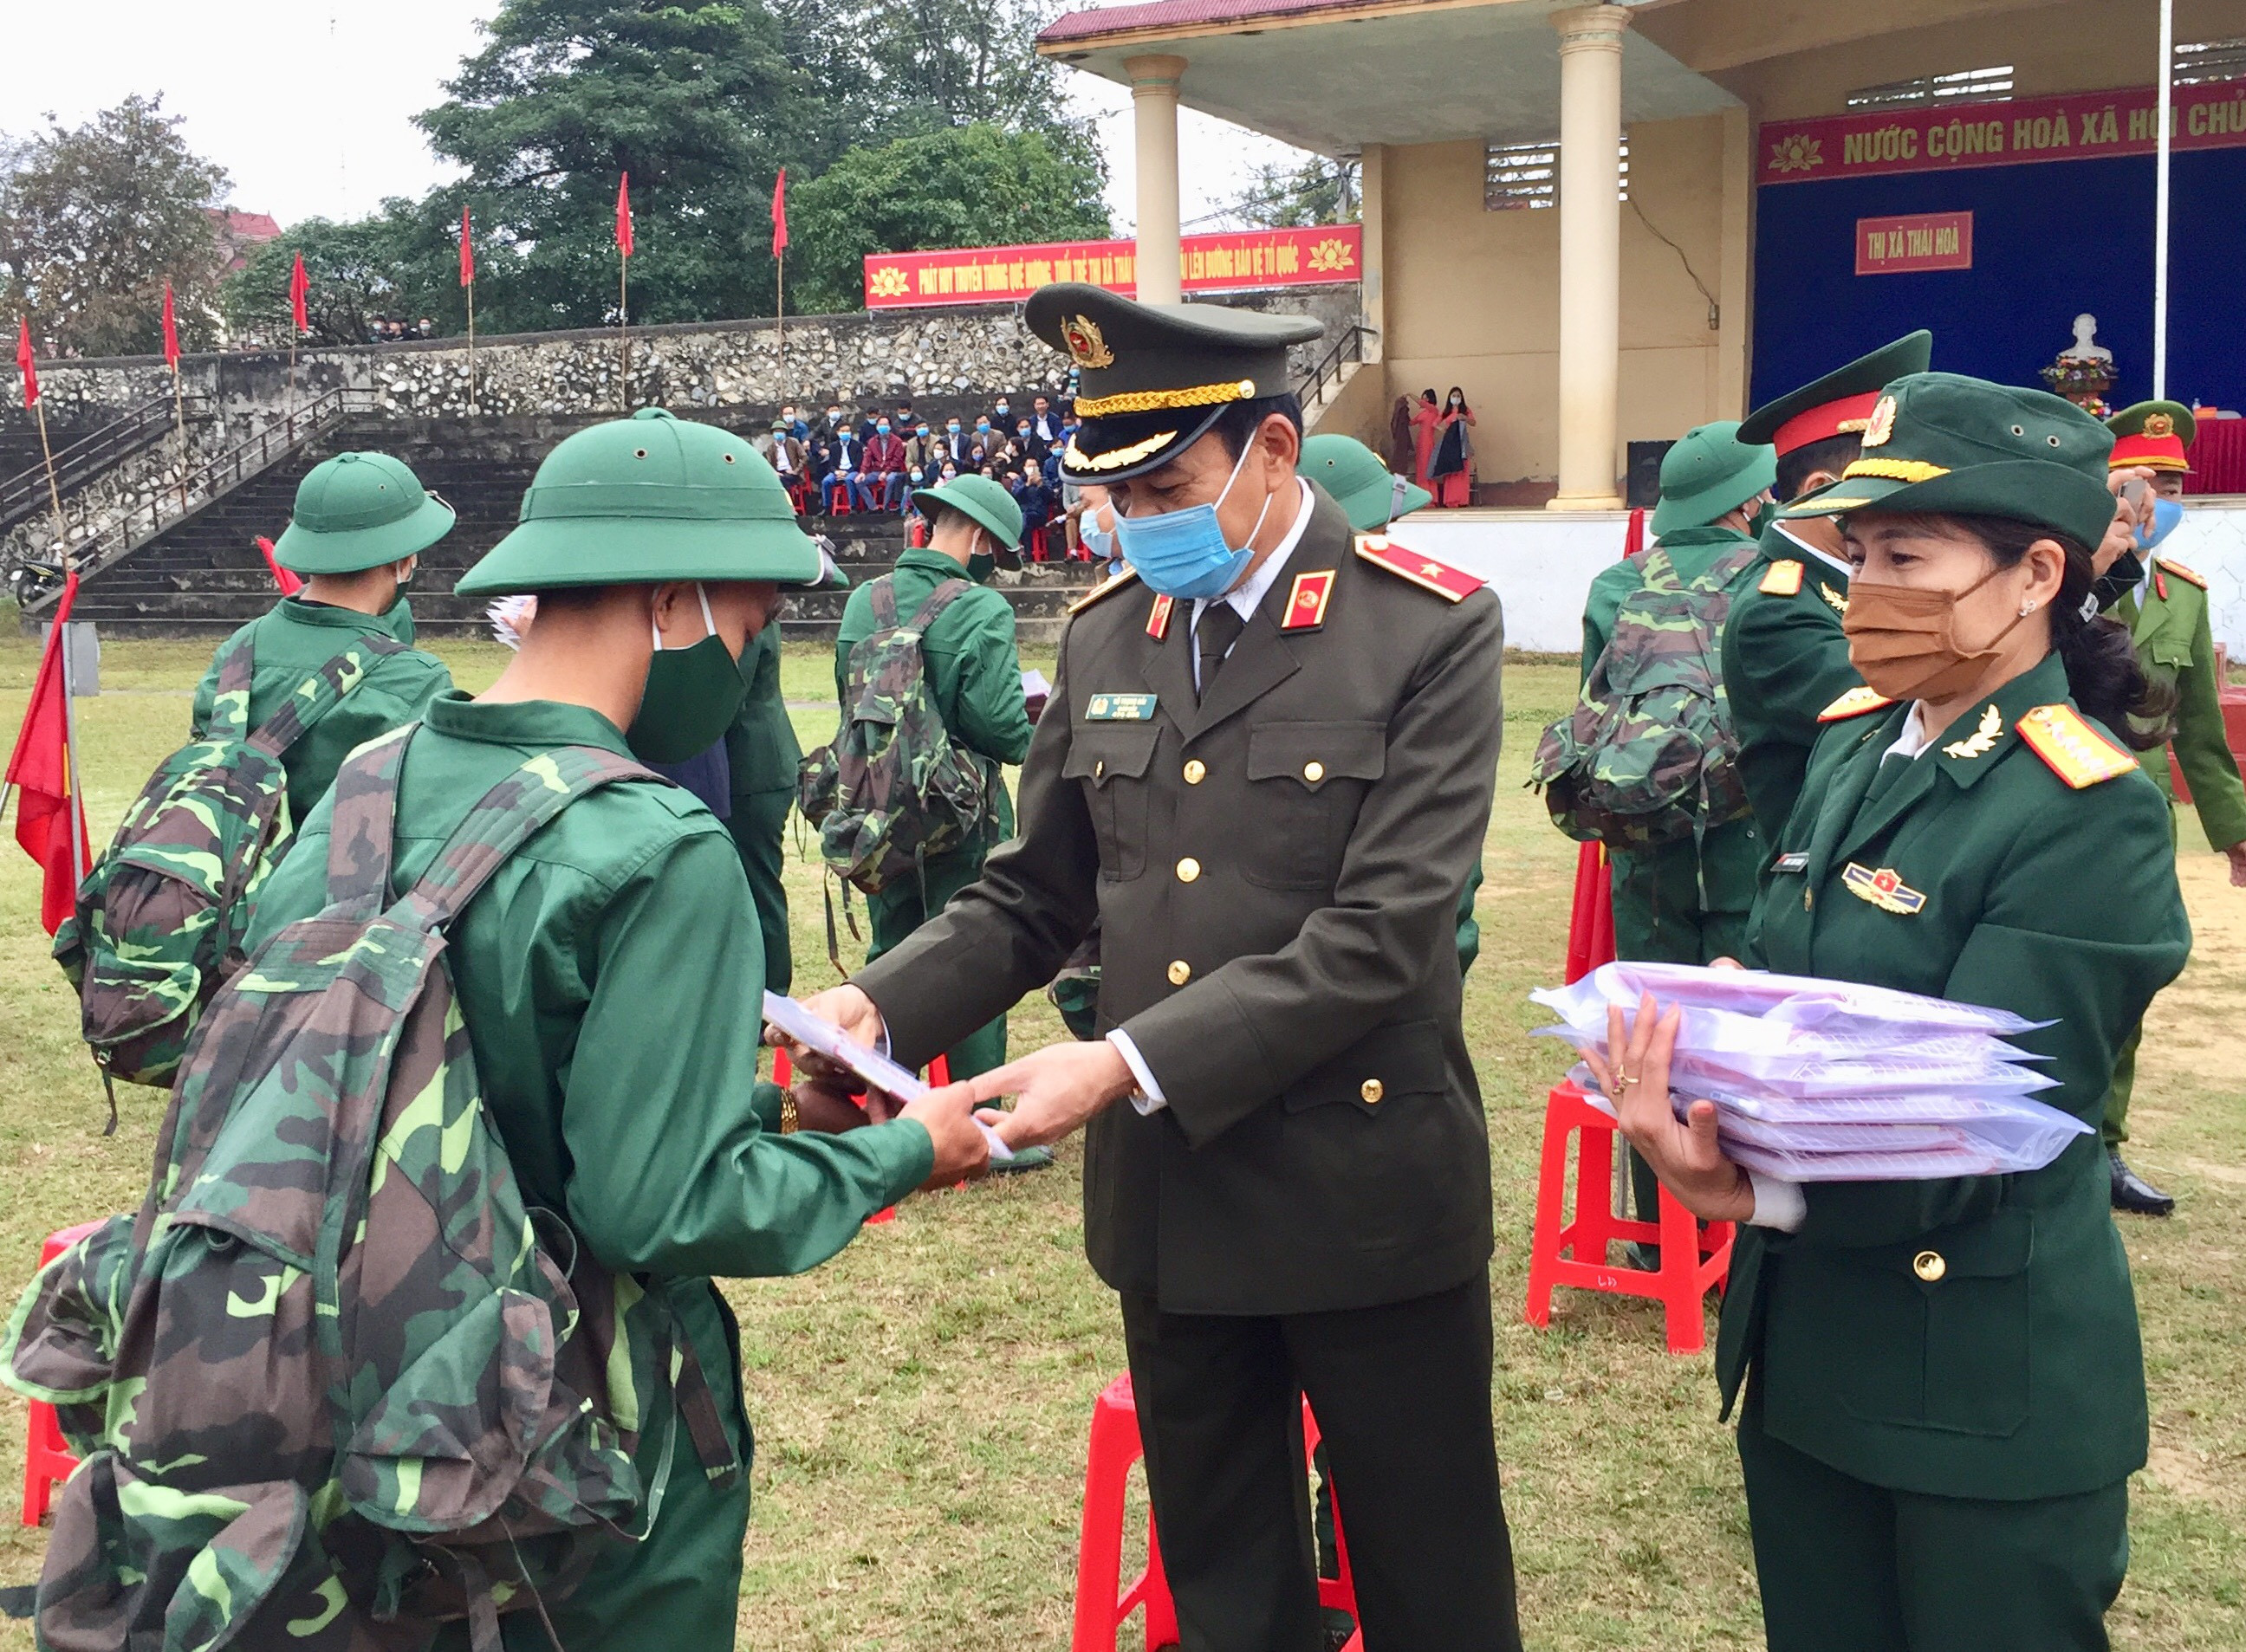 Thiếu tướng Võ Trọng Hải tặng hoa các tân binh. Ảnh: CTV